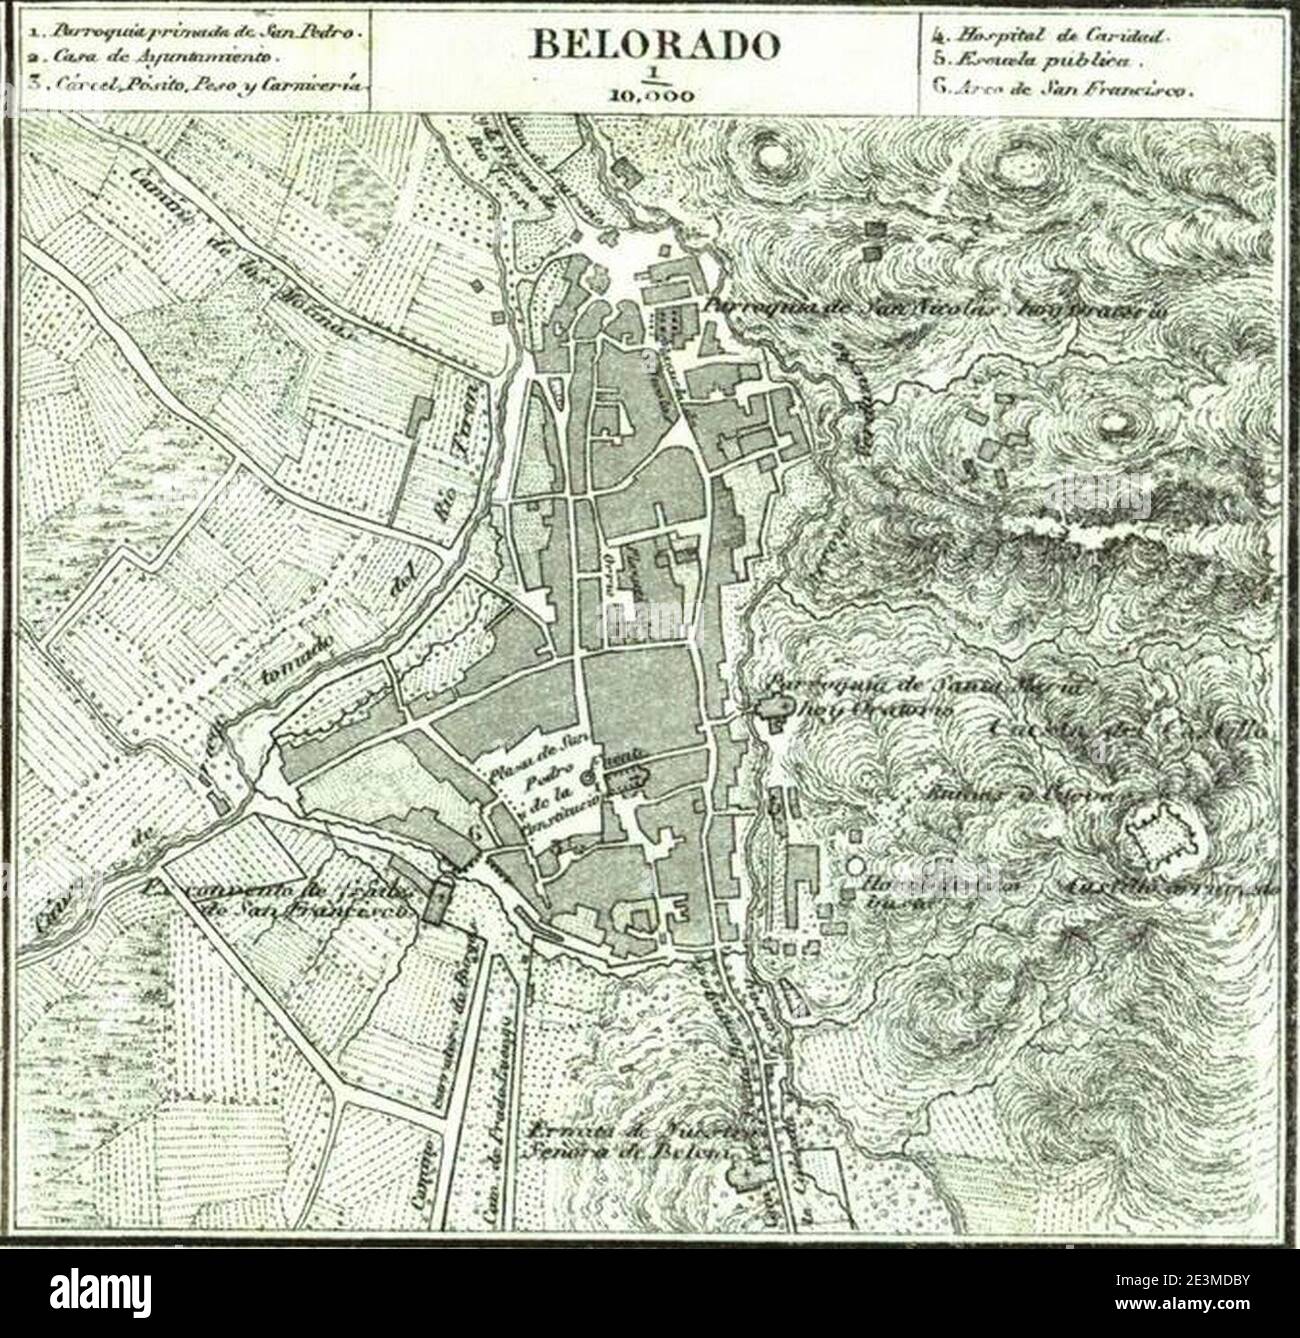 Mapa de Belorado (1868), por Francisco Coello. Stock Photo